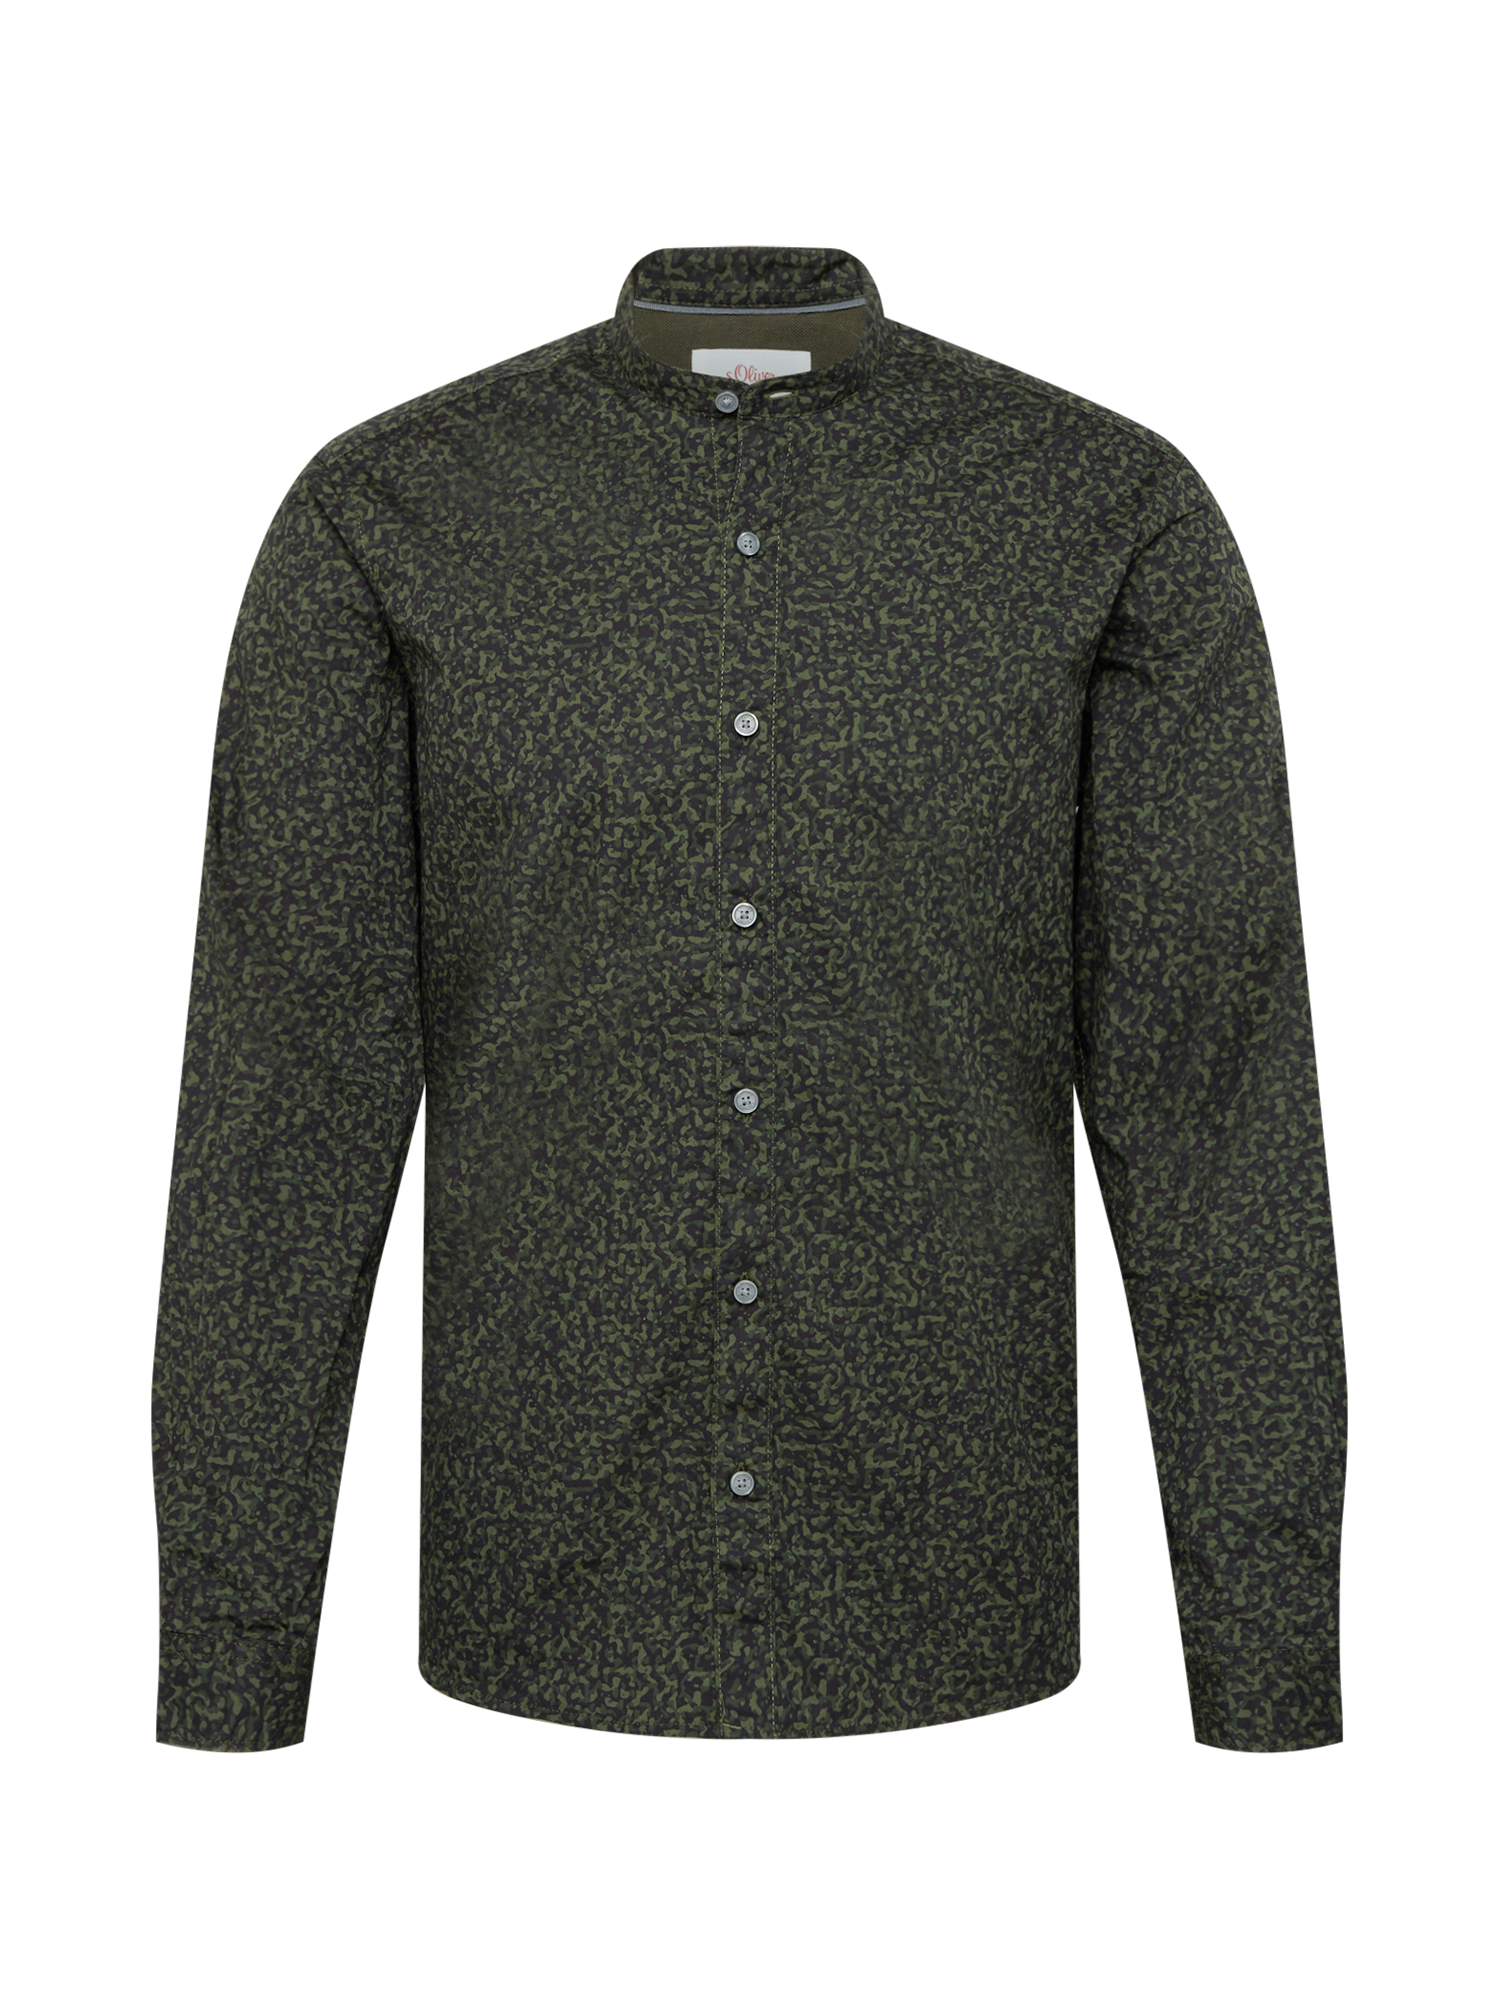 Plus size Odzież s.Oliver Koszula w kolorze Khaki, Oliwkowym 